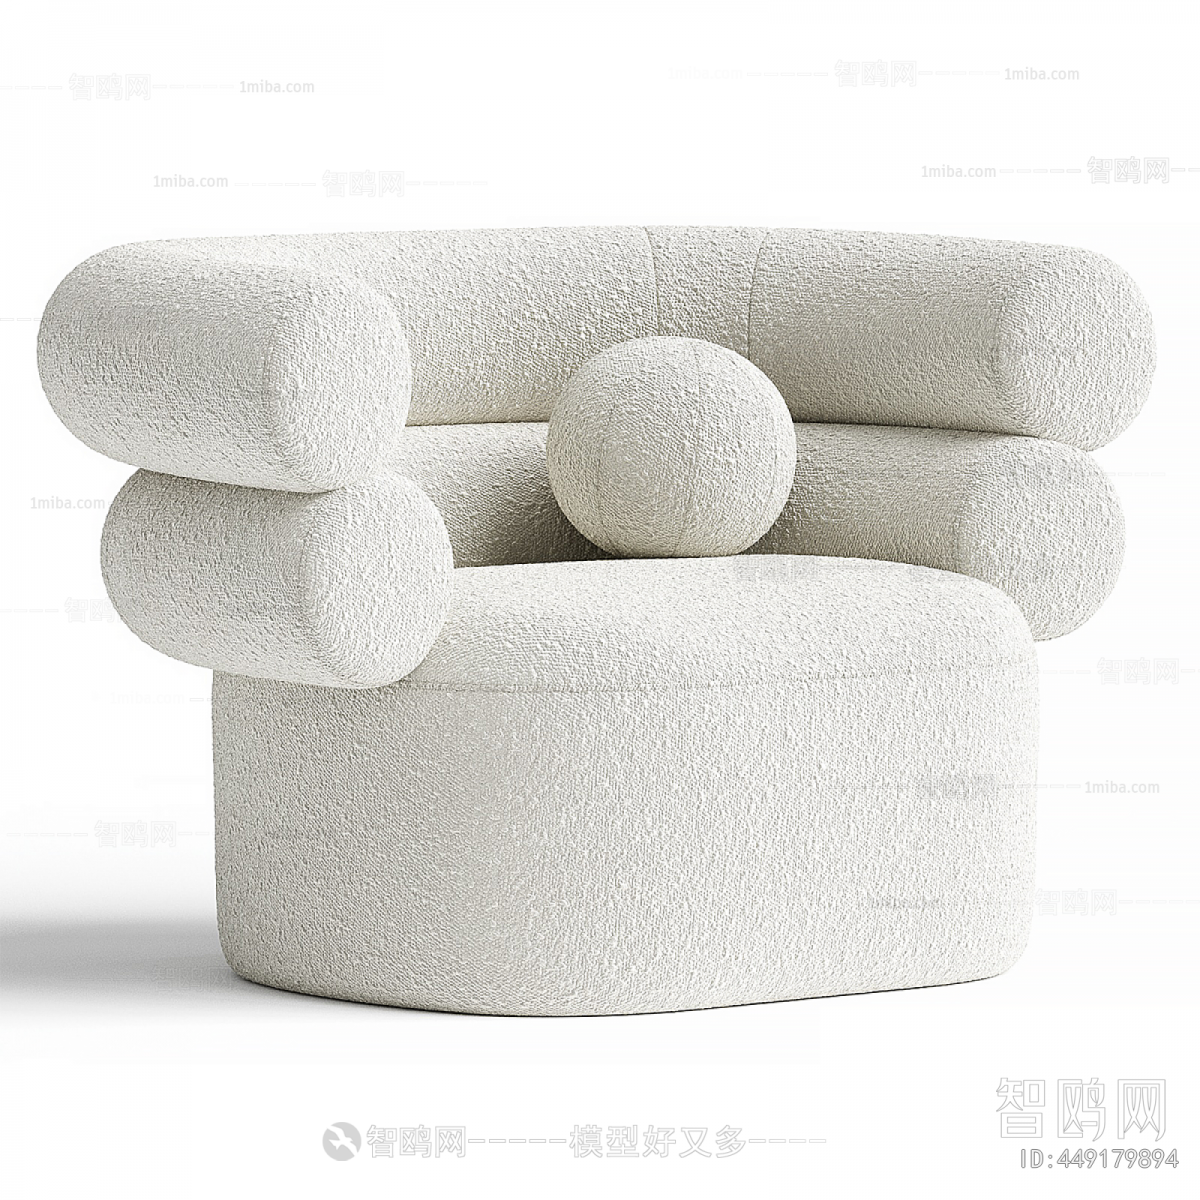 Wabi-sabi Style Single Sofa